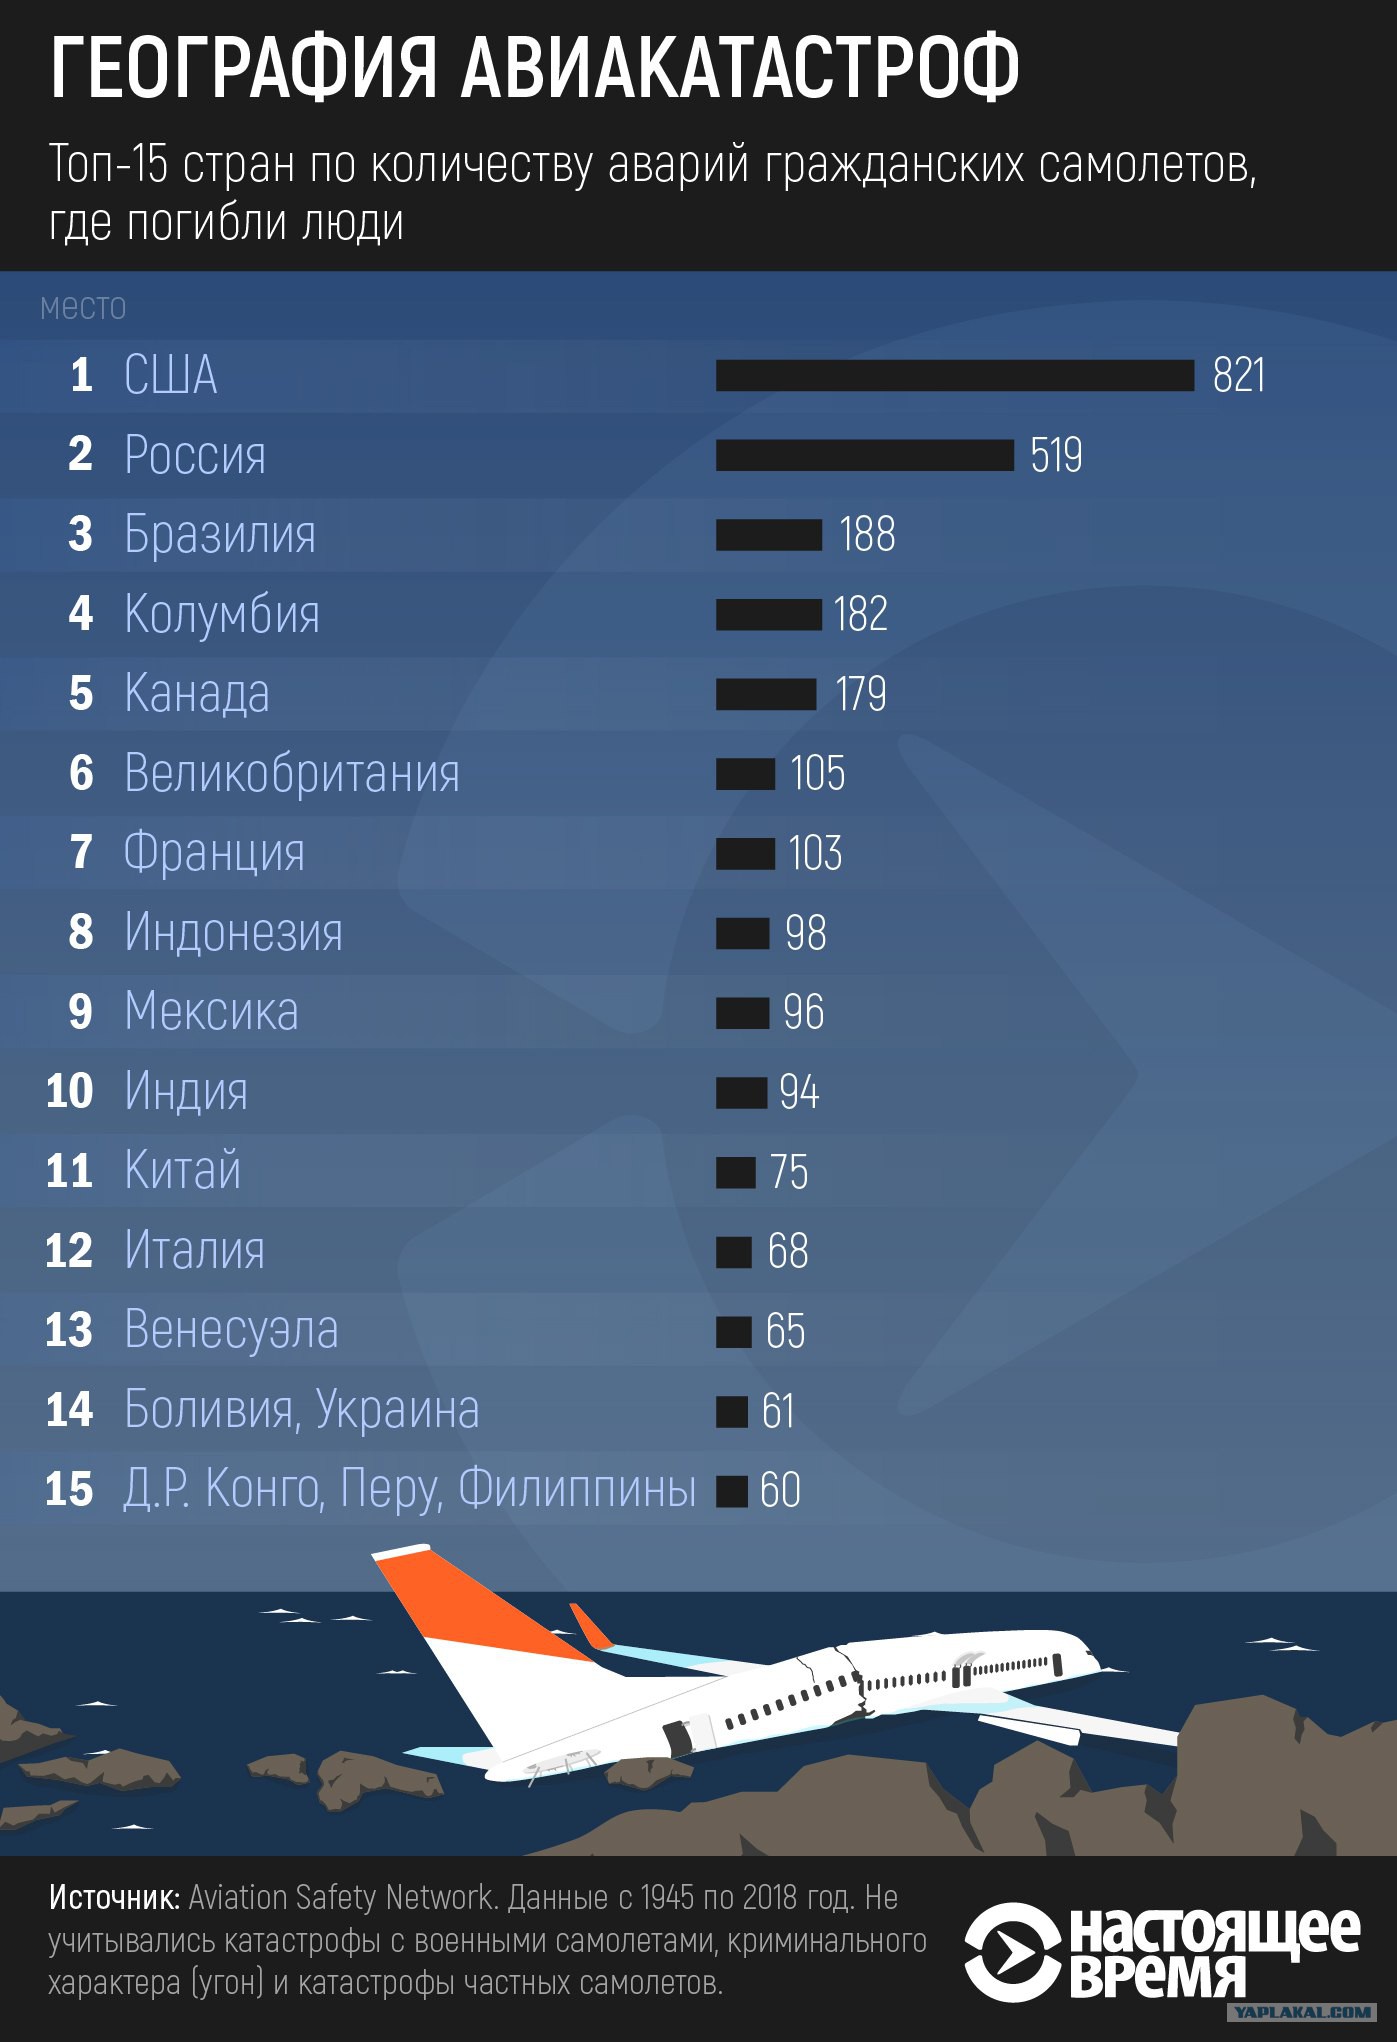 Авиакатастрофы по годам. Статистика падения самолетов в мире. Количество самолетов по странам. Статистика крушений самолетов. Статистика авиакатастроф по годам.